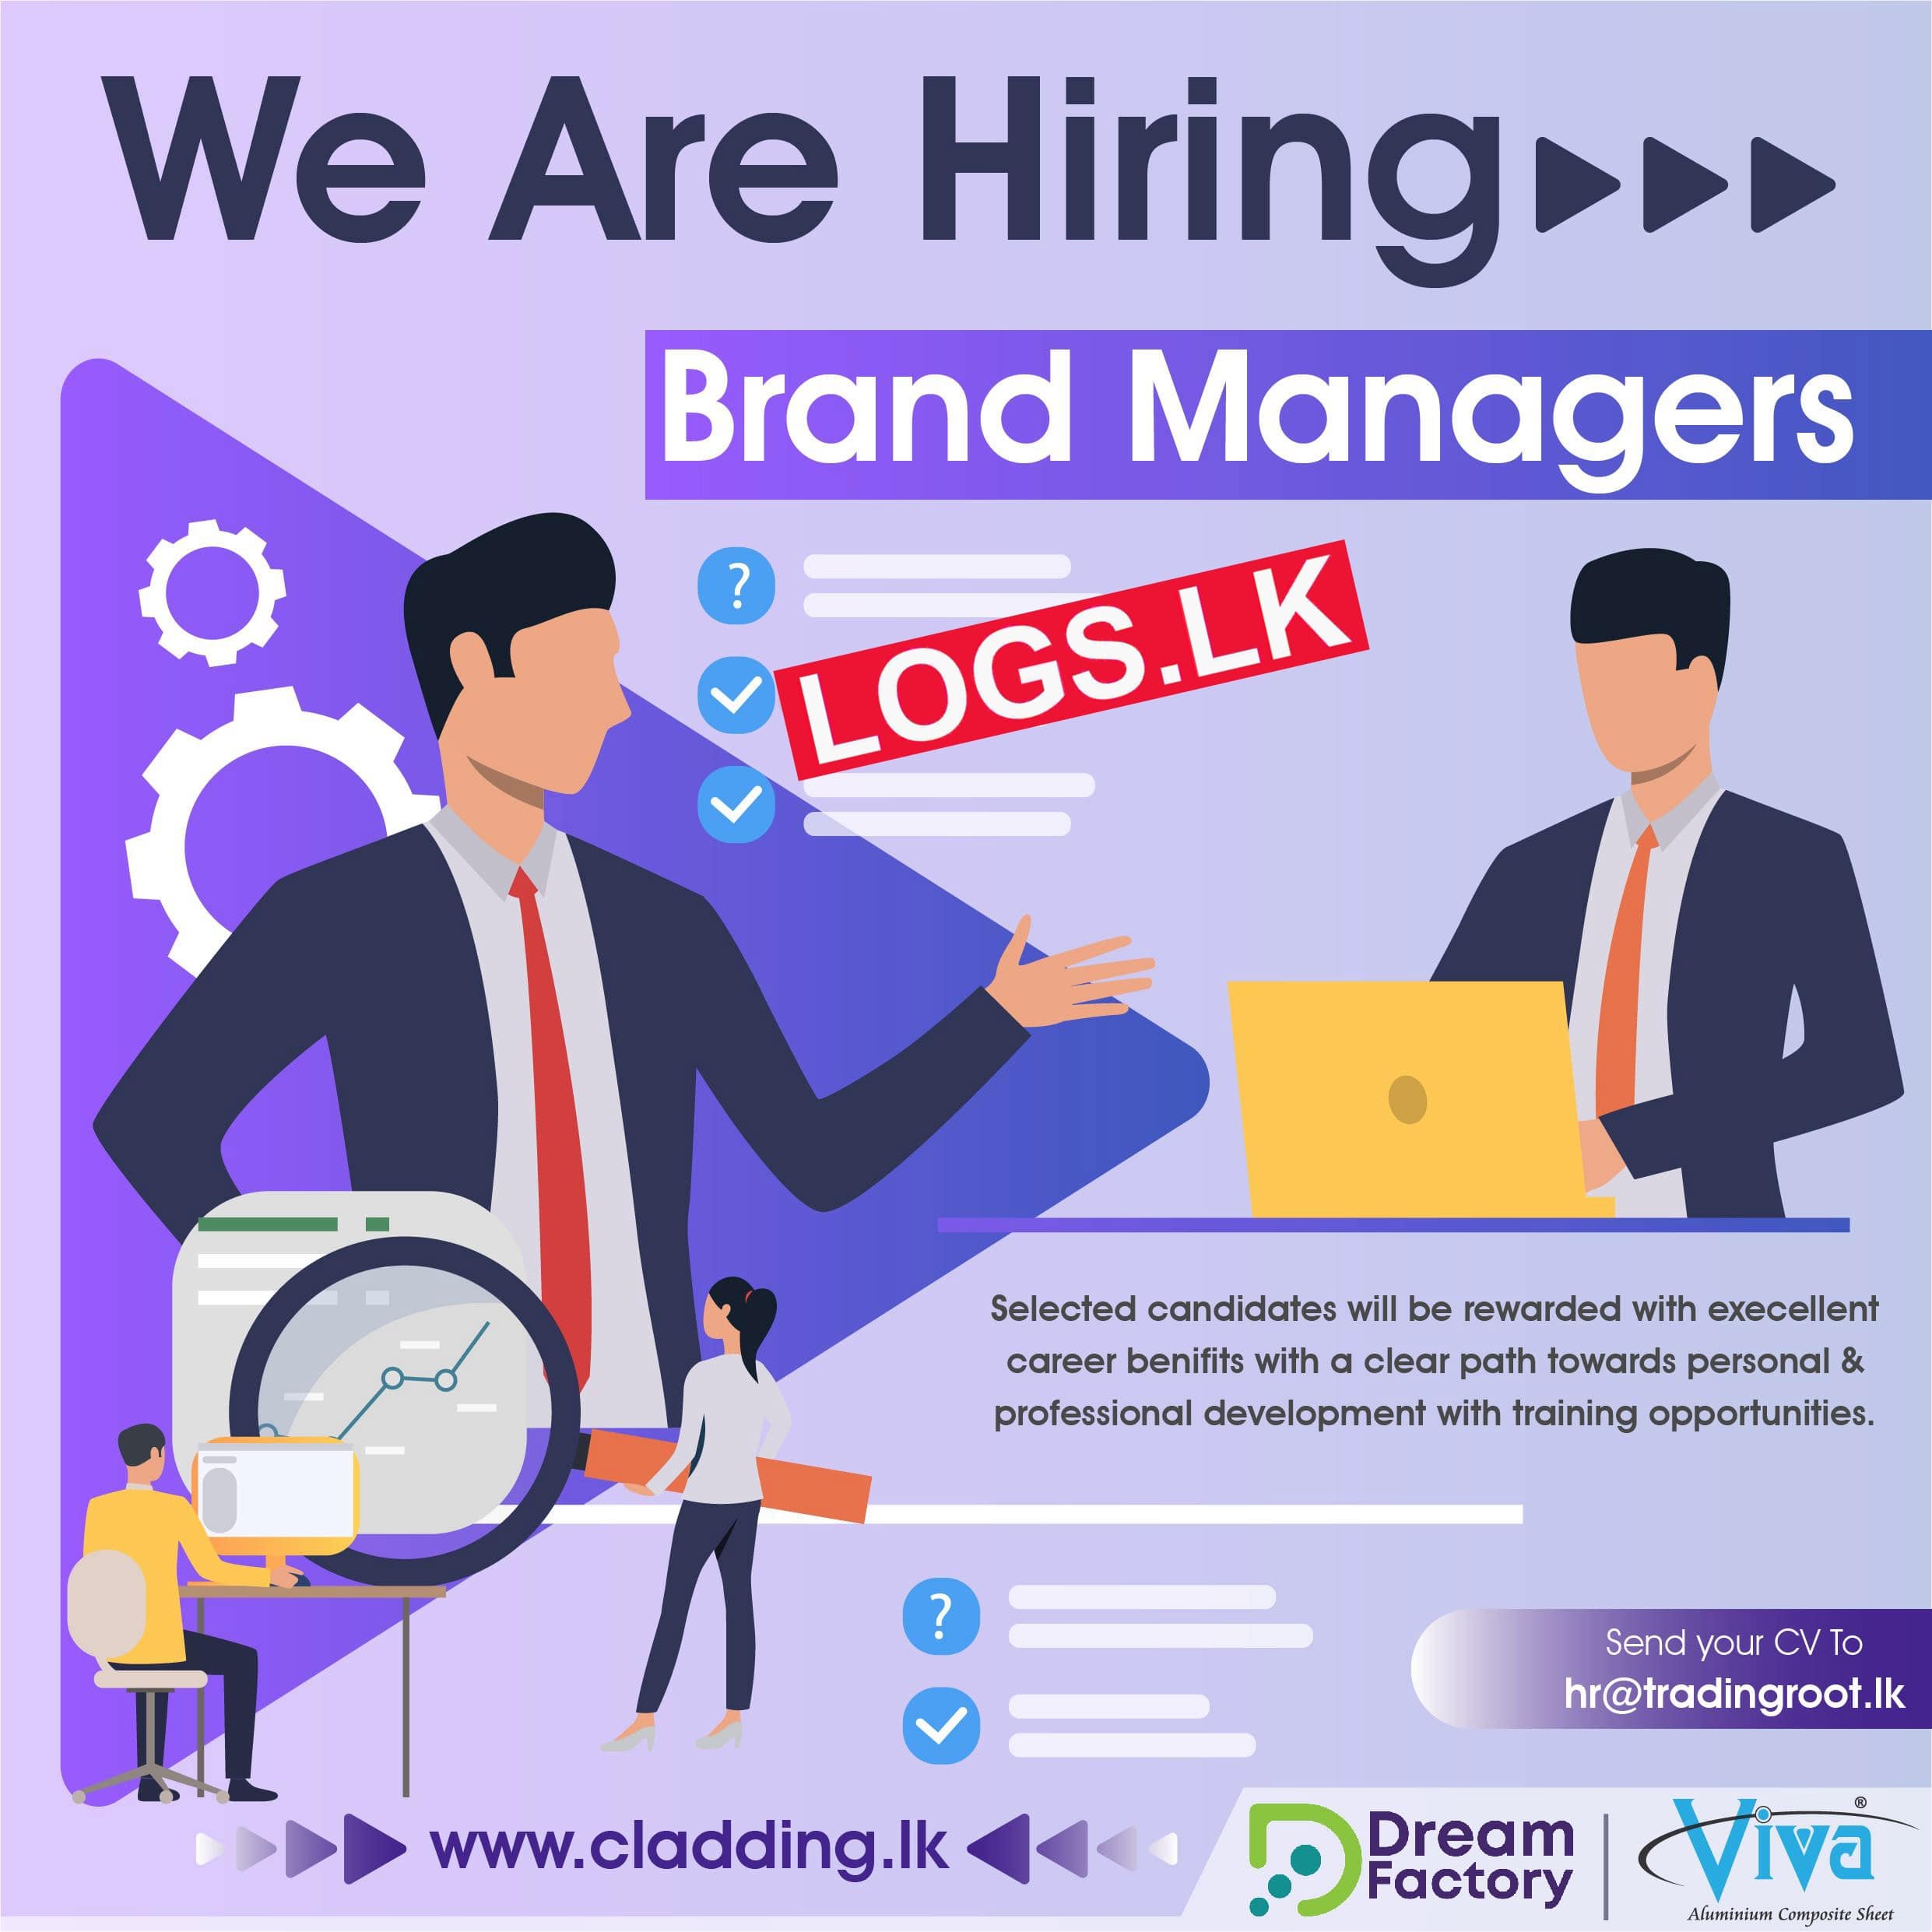 Brand Managers Job Vacancies at Trading Root International Job Vacancy